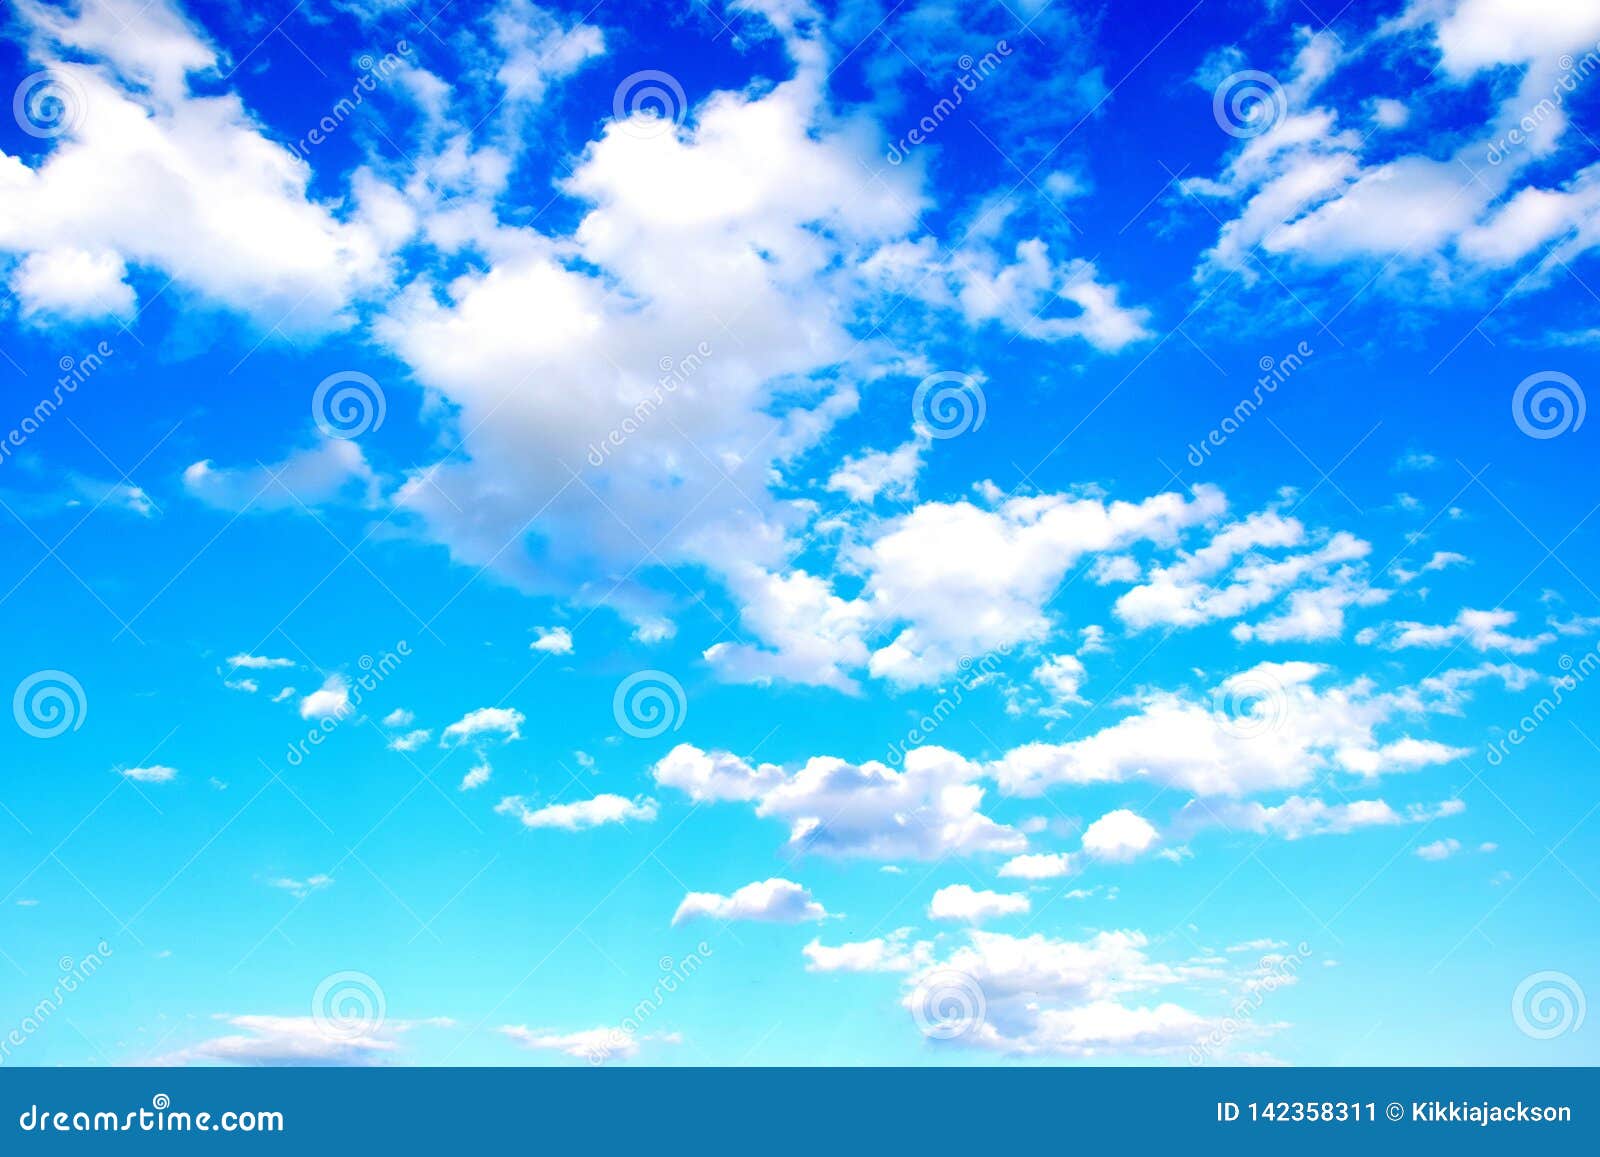 Nền xanh trời với đám mây: Bức ảnh nền xanh trời với đám mây sẽ đưa bạn vào không gian đầy mộng mơ và yên tĩnh. Cảm nhận được bầu không khí trong lành, gió nhẹ thoảng qua làm bạn cảm thấy thư giãn và thoải mái.